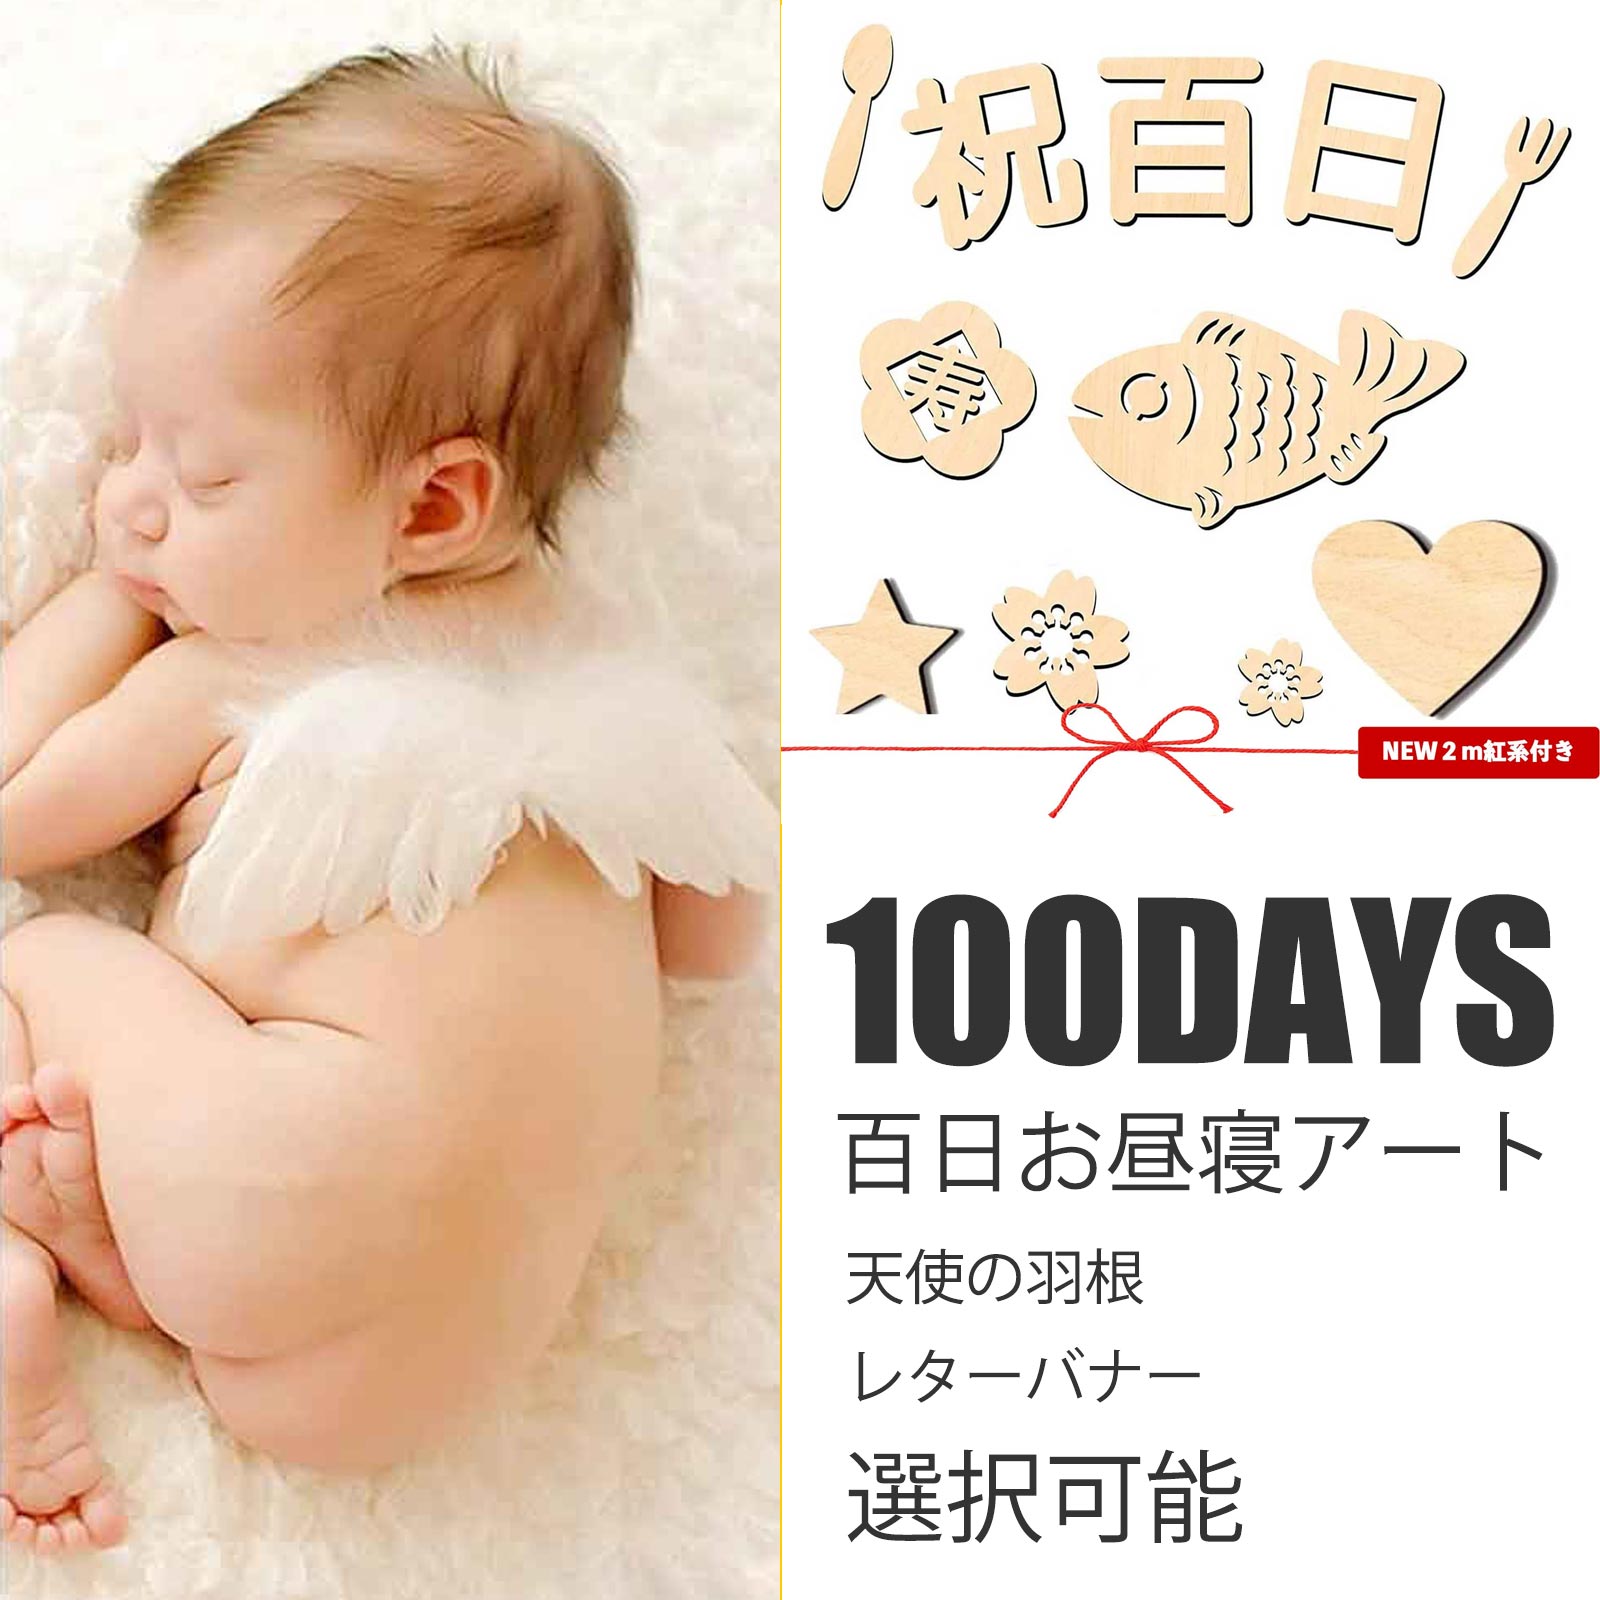 レターバナー 木製 100日 お食い初め 百日 祝い 飾り 昼寝アート 赤ちゃん